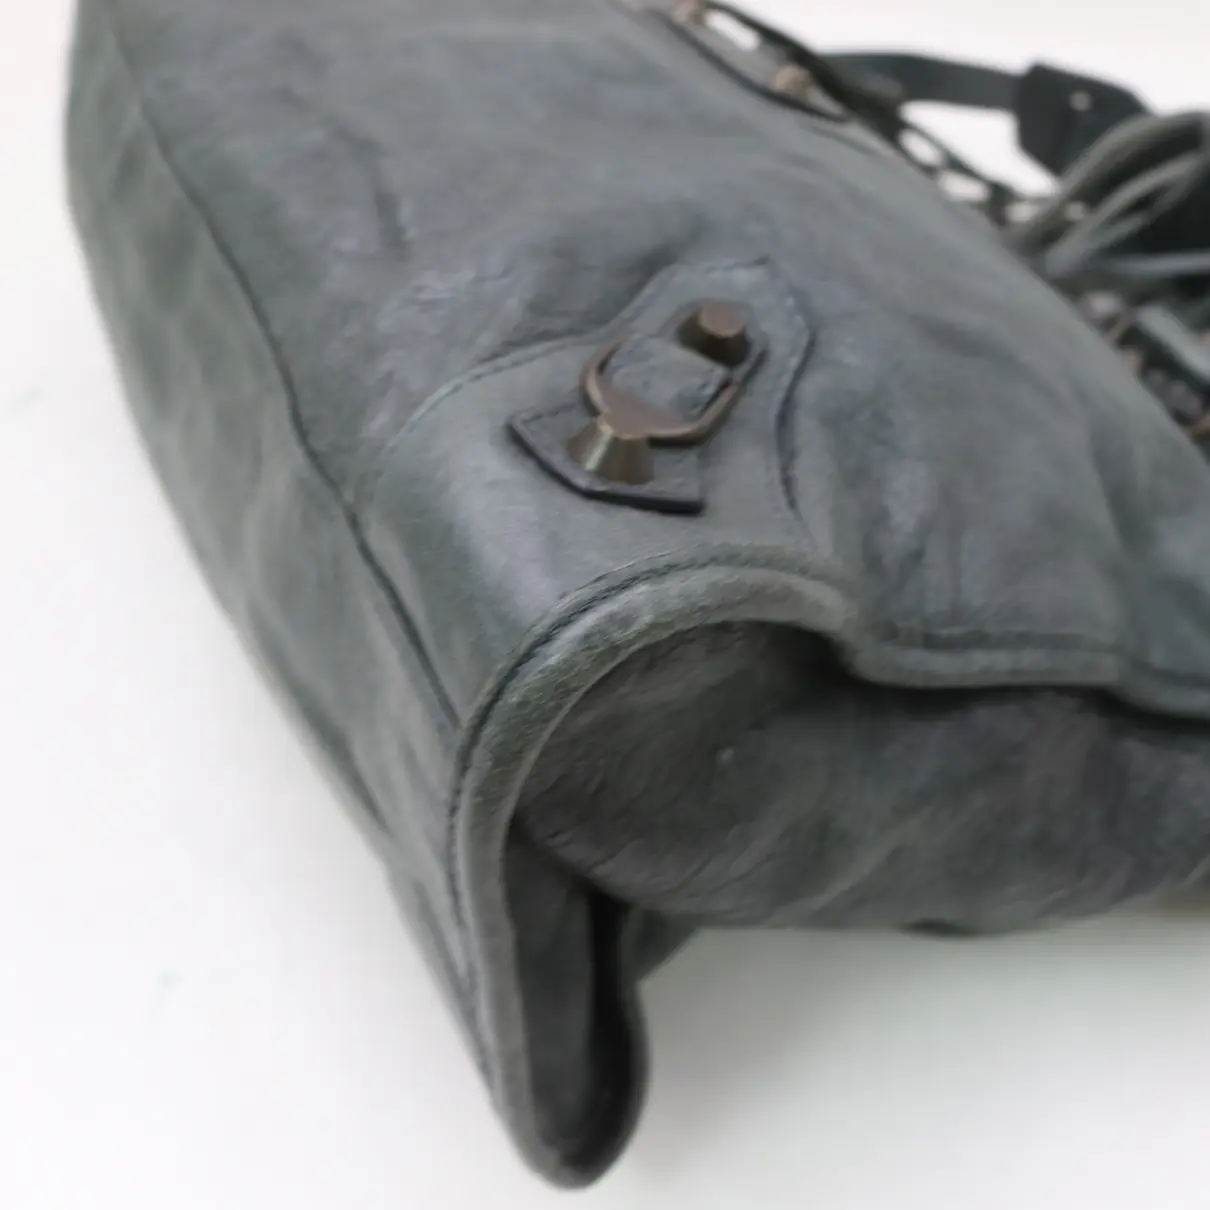 Town leather handbag Balenciaga